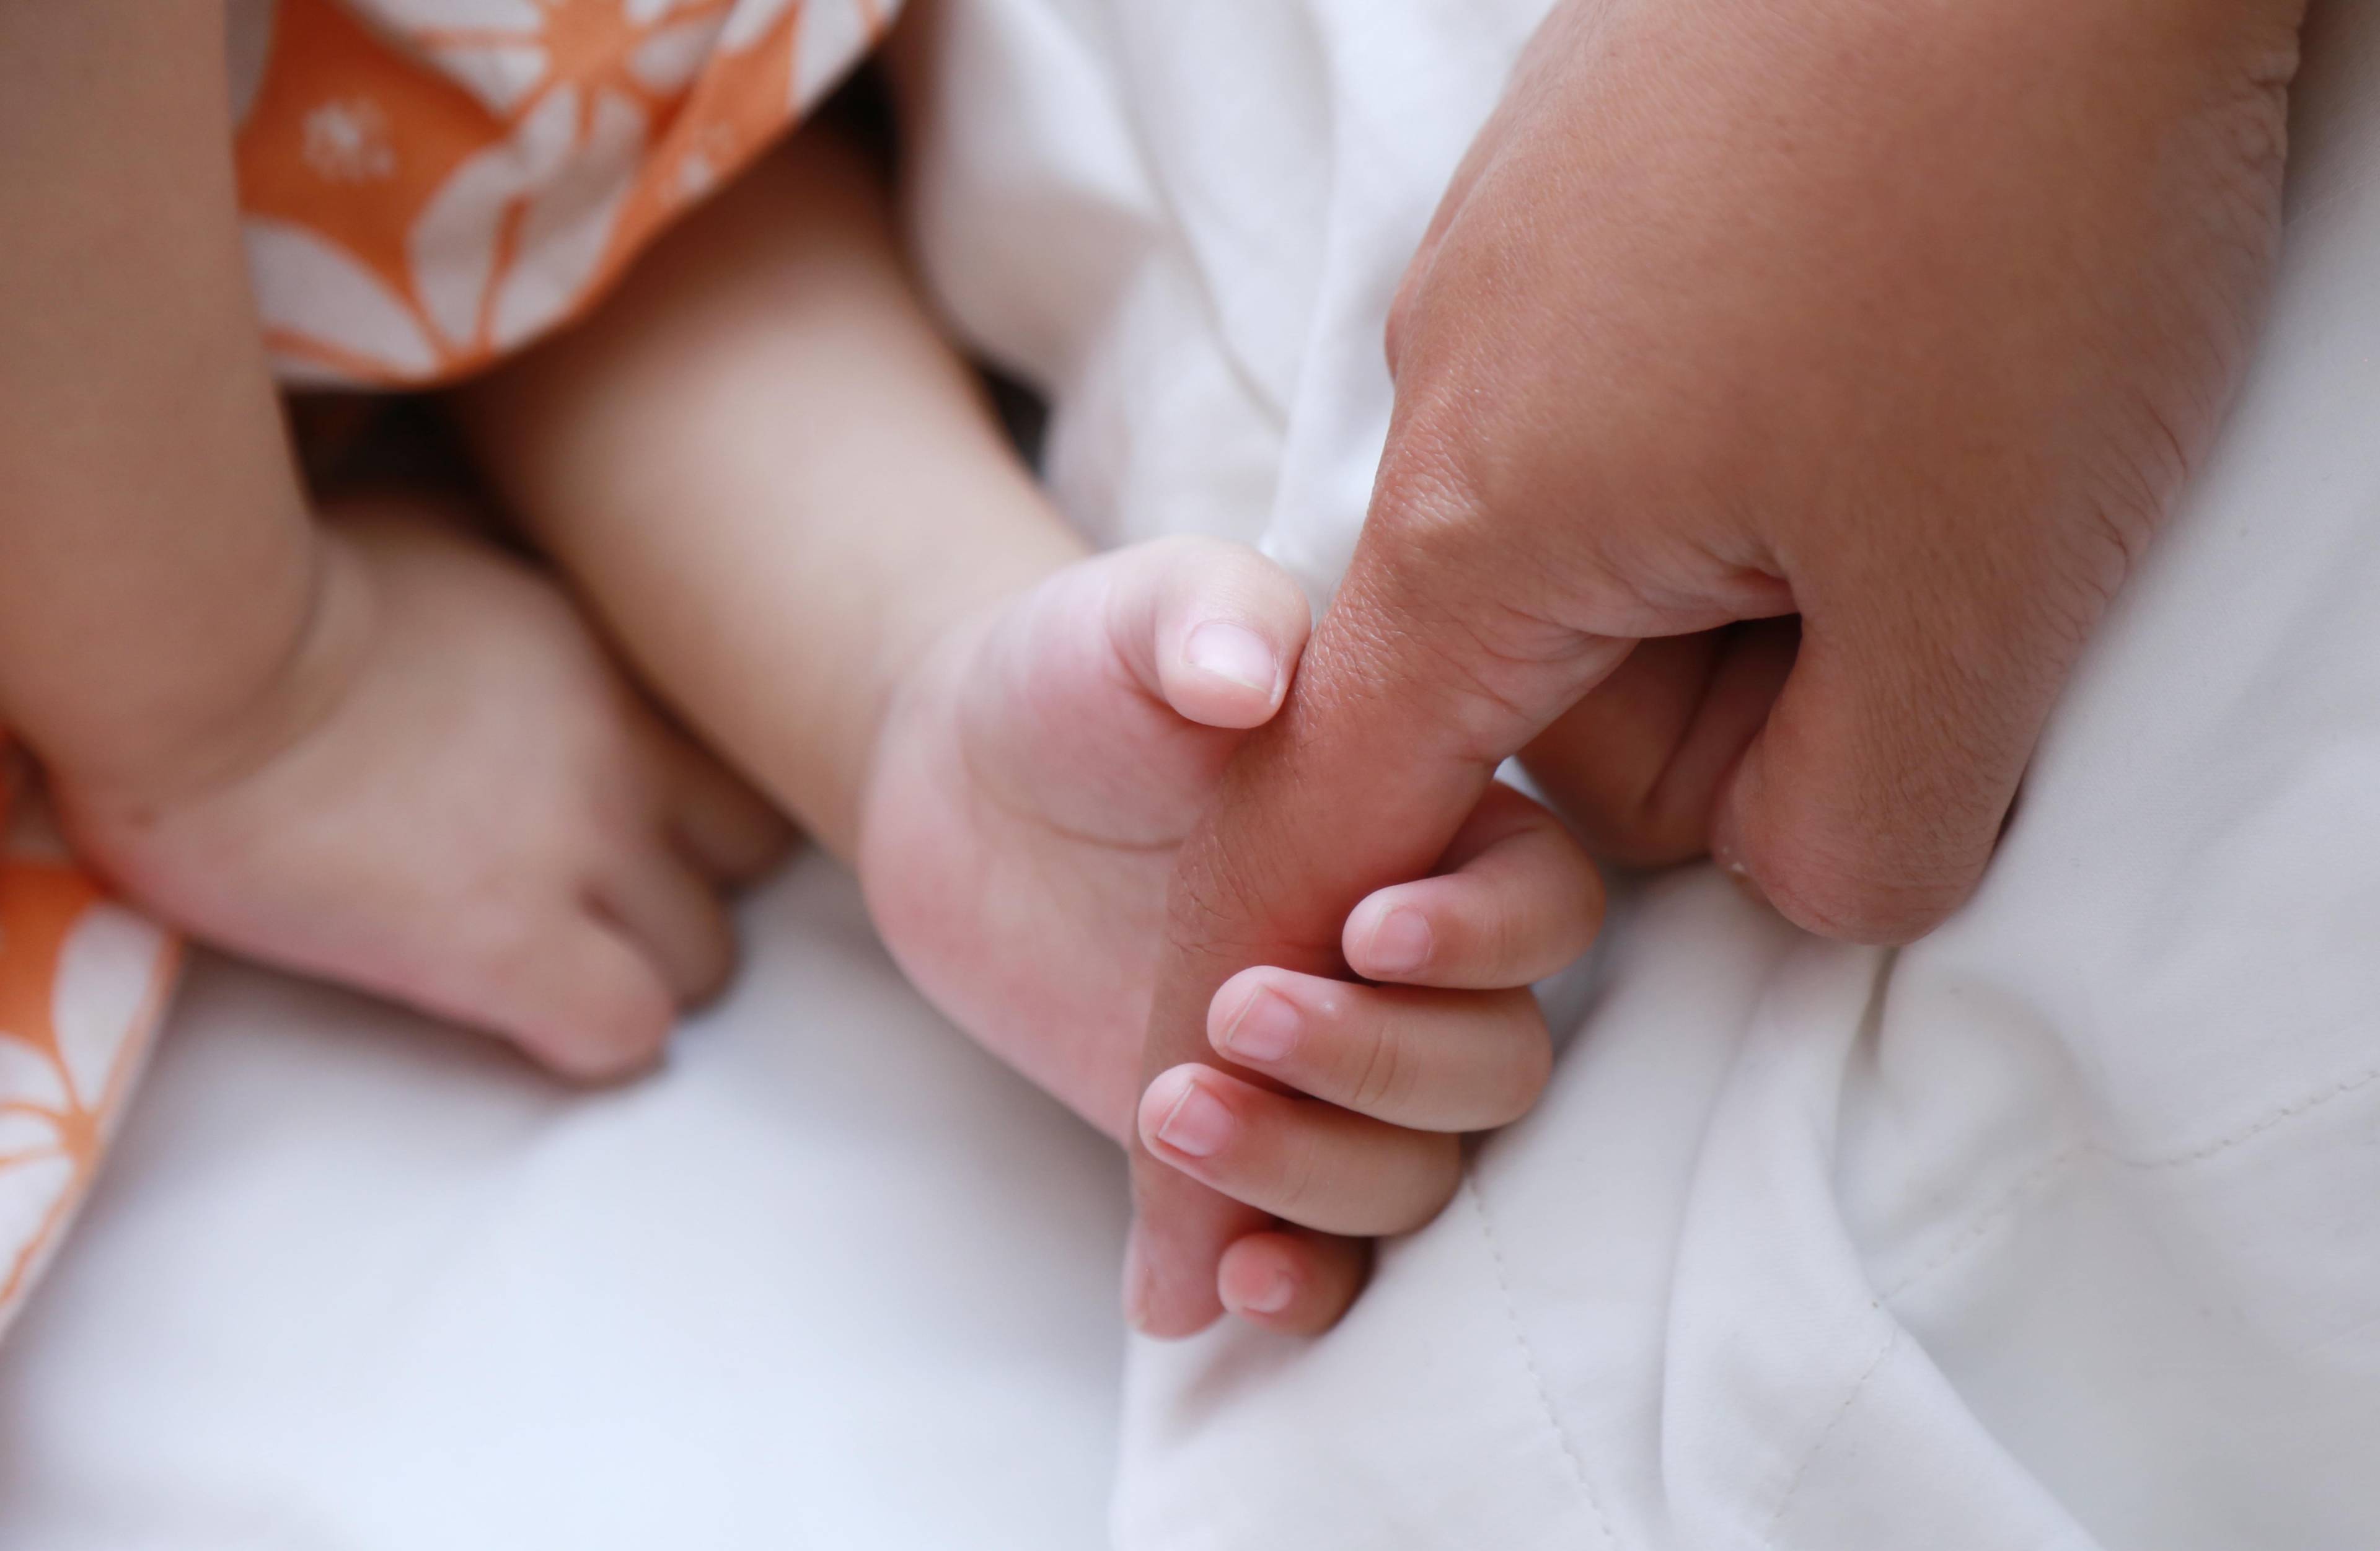 Biopsi pada Anak, Tindakan Awal Menyelamatkan Nyawa si Kecil